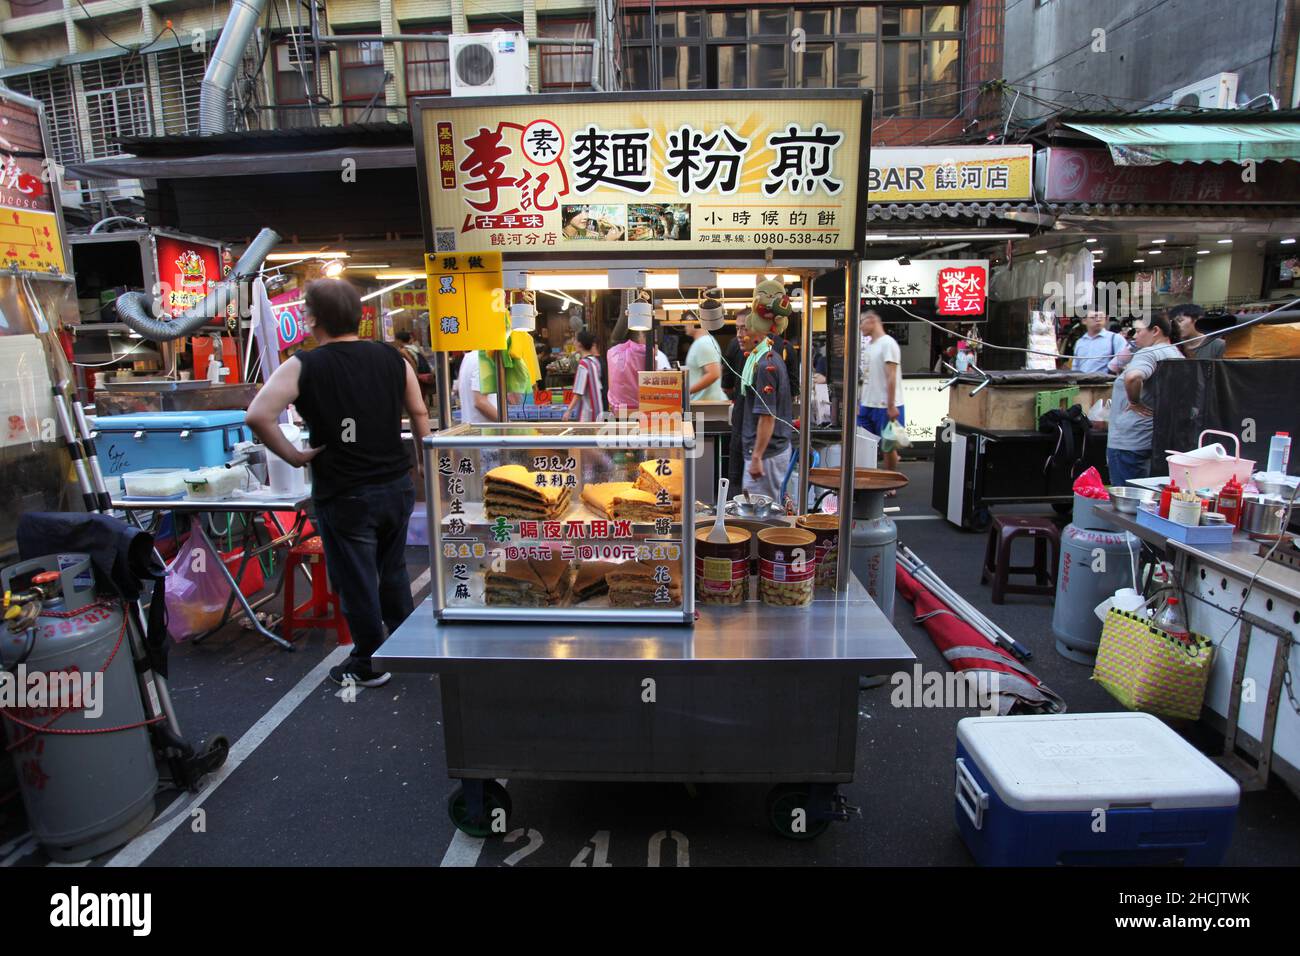 Mercado nocturno de la calle Raohe en el distrito Songshan de Taipei en Taiwán, uno de los mercados nocturnos más famosos de Taipei famoso por su comida callejera. Foto de stock